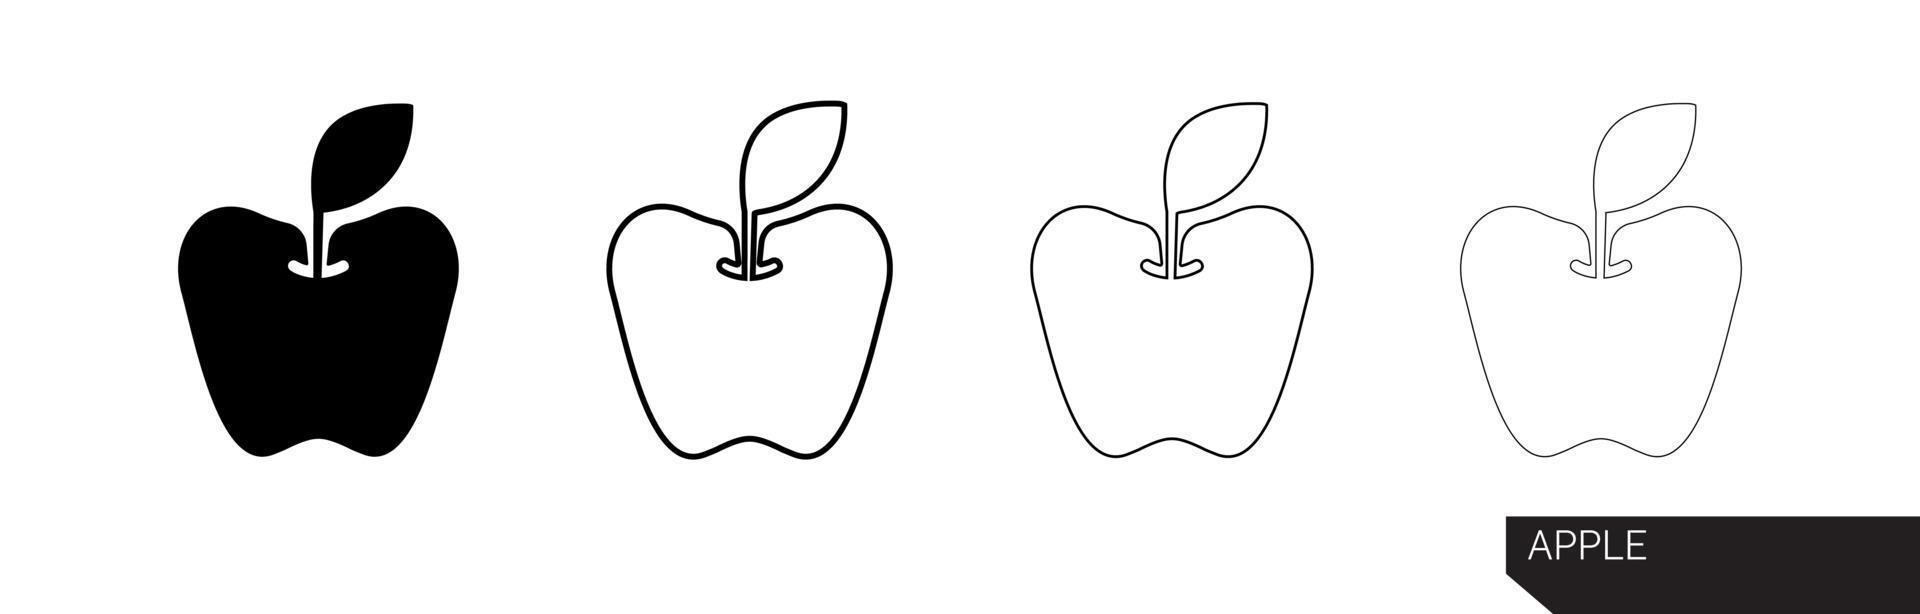 äpple ikon. äpple siluett vektor ikon illustration i svart färg isolerad på vit bakgrund. äppelikon i olika tjocklekar. modern linjekonstdesign.